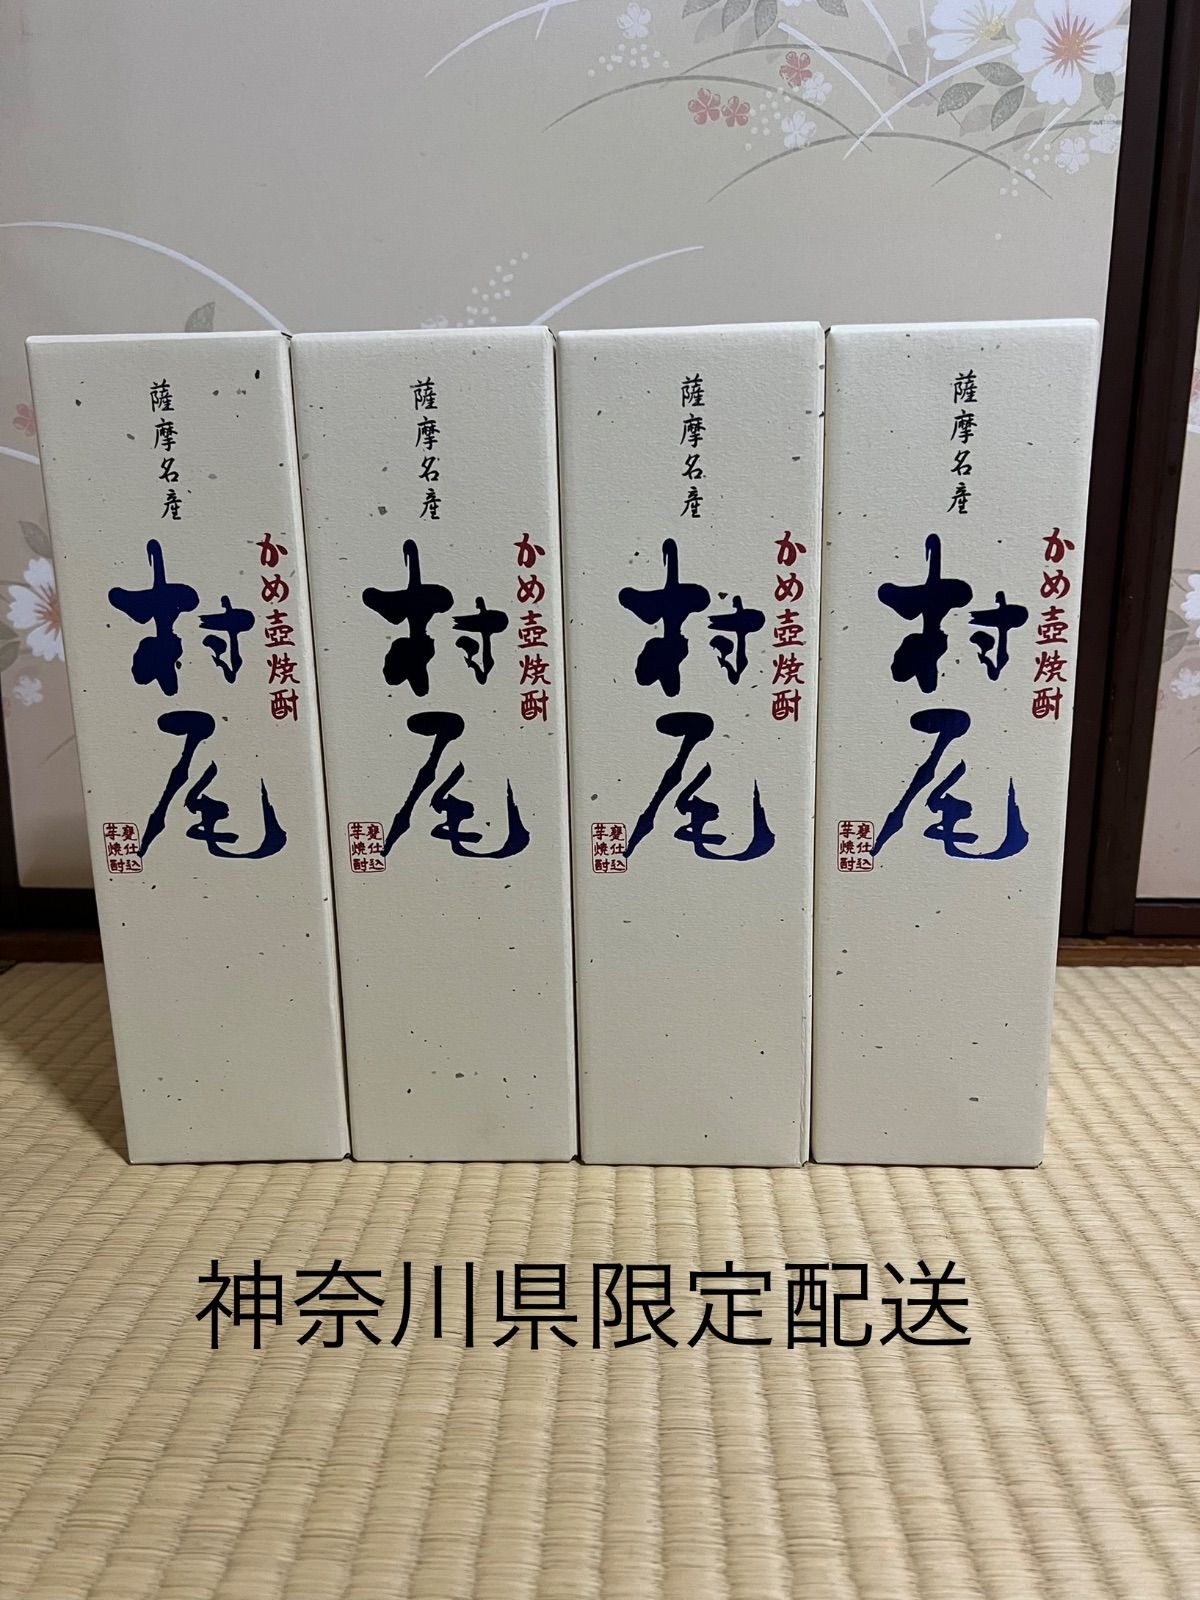 焼酎の種類芋焼酎村尾 ANAオリジナルパッケージ 750ml 4本セット